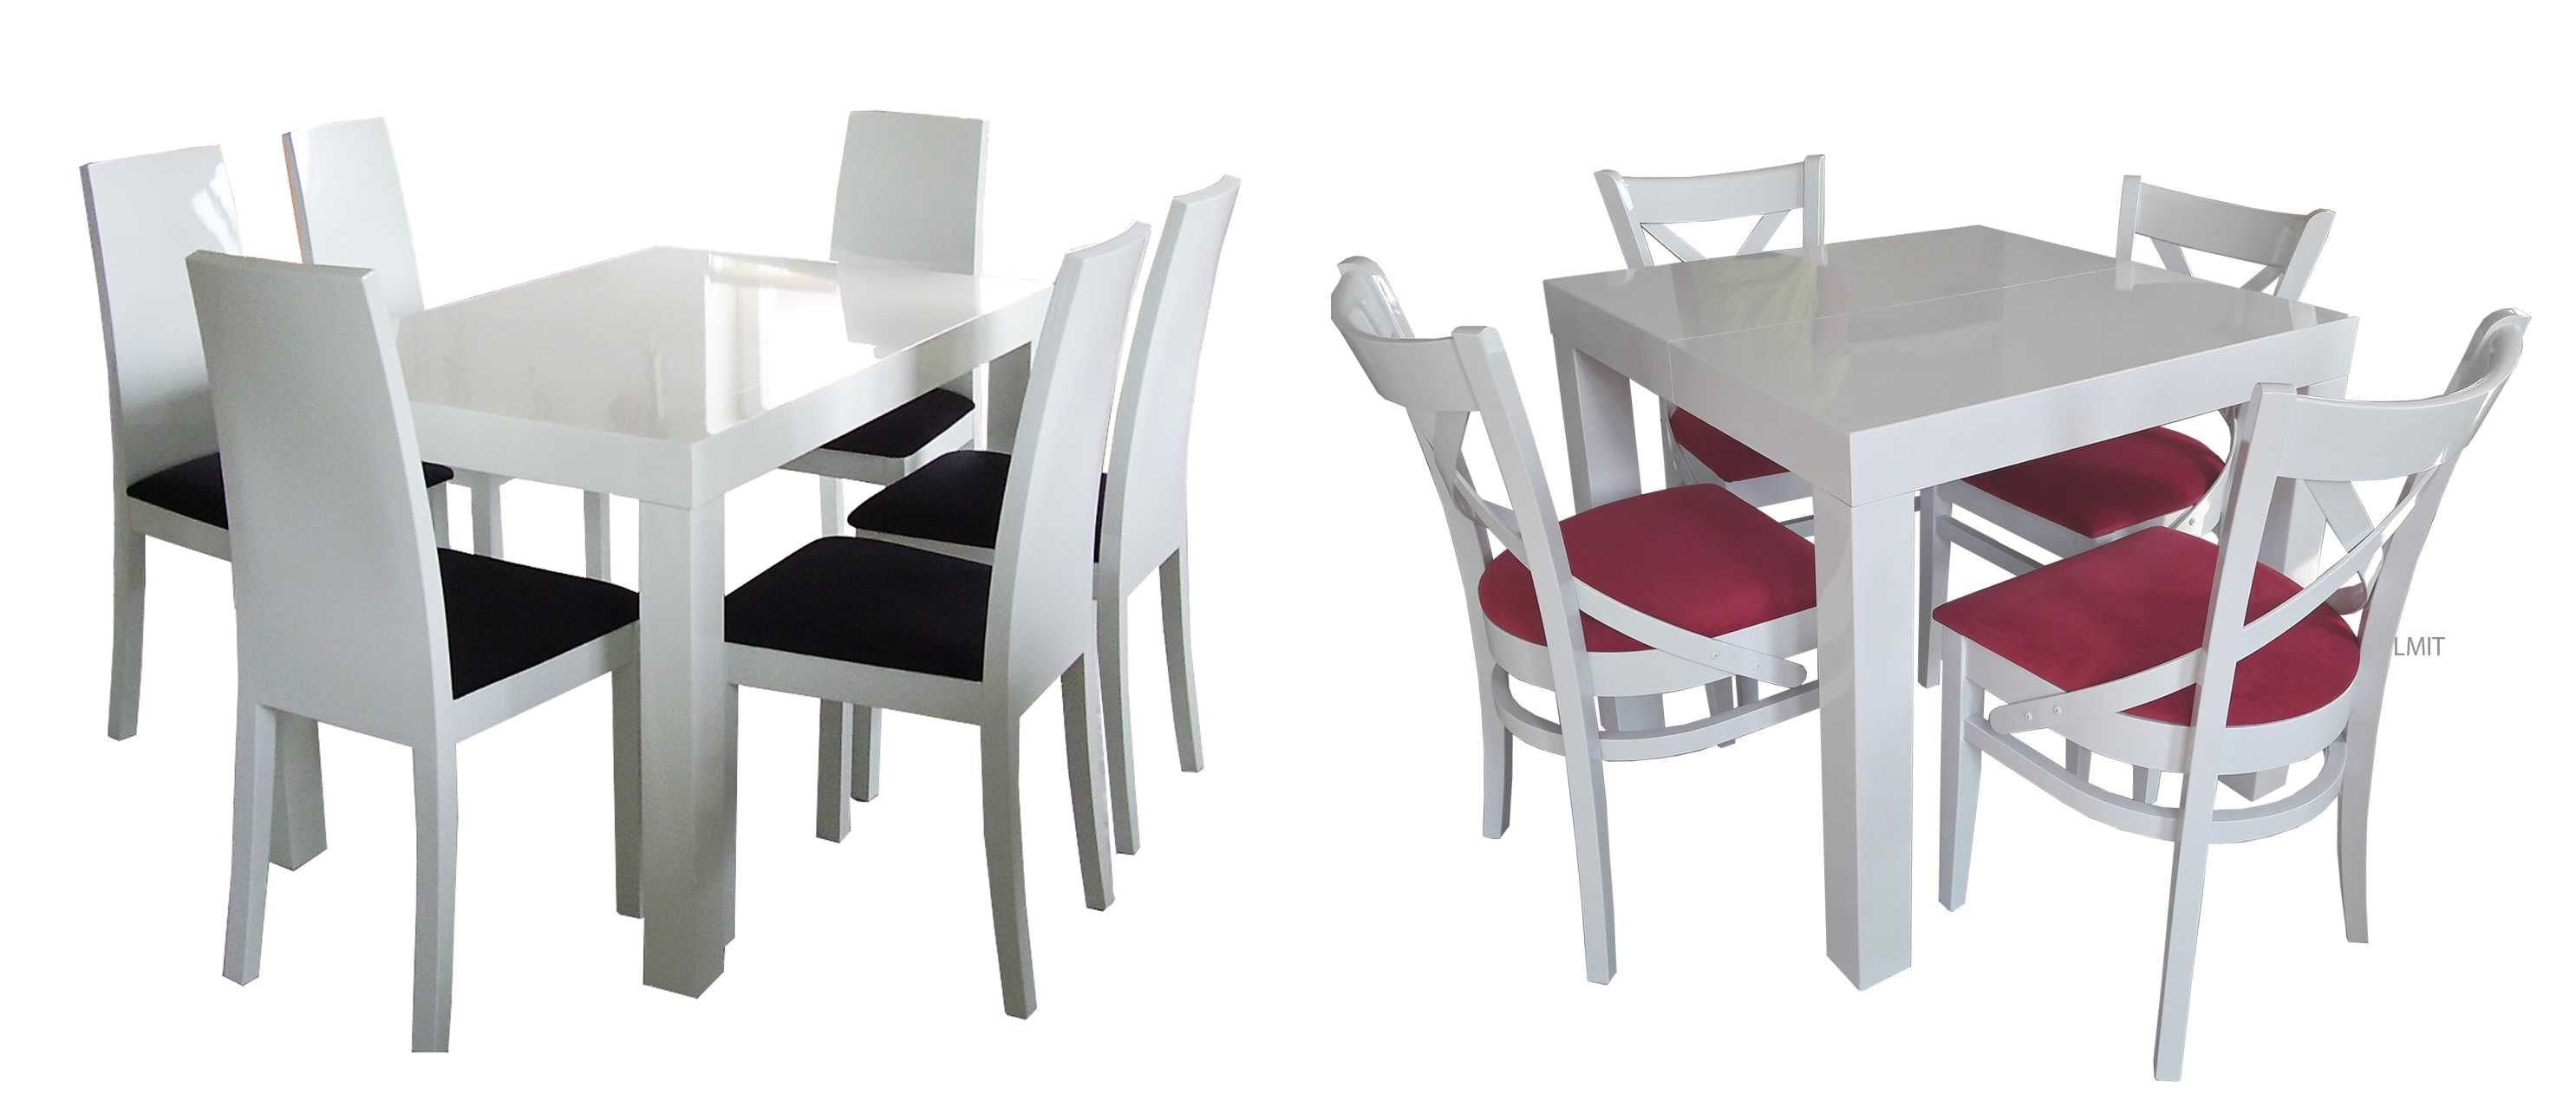 Stół dab rozkładany wymiary kolory +4 krzesła wysyłka cała polska